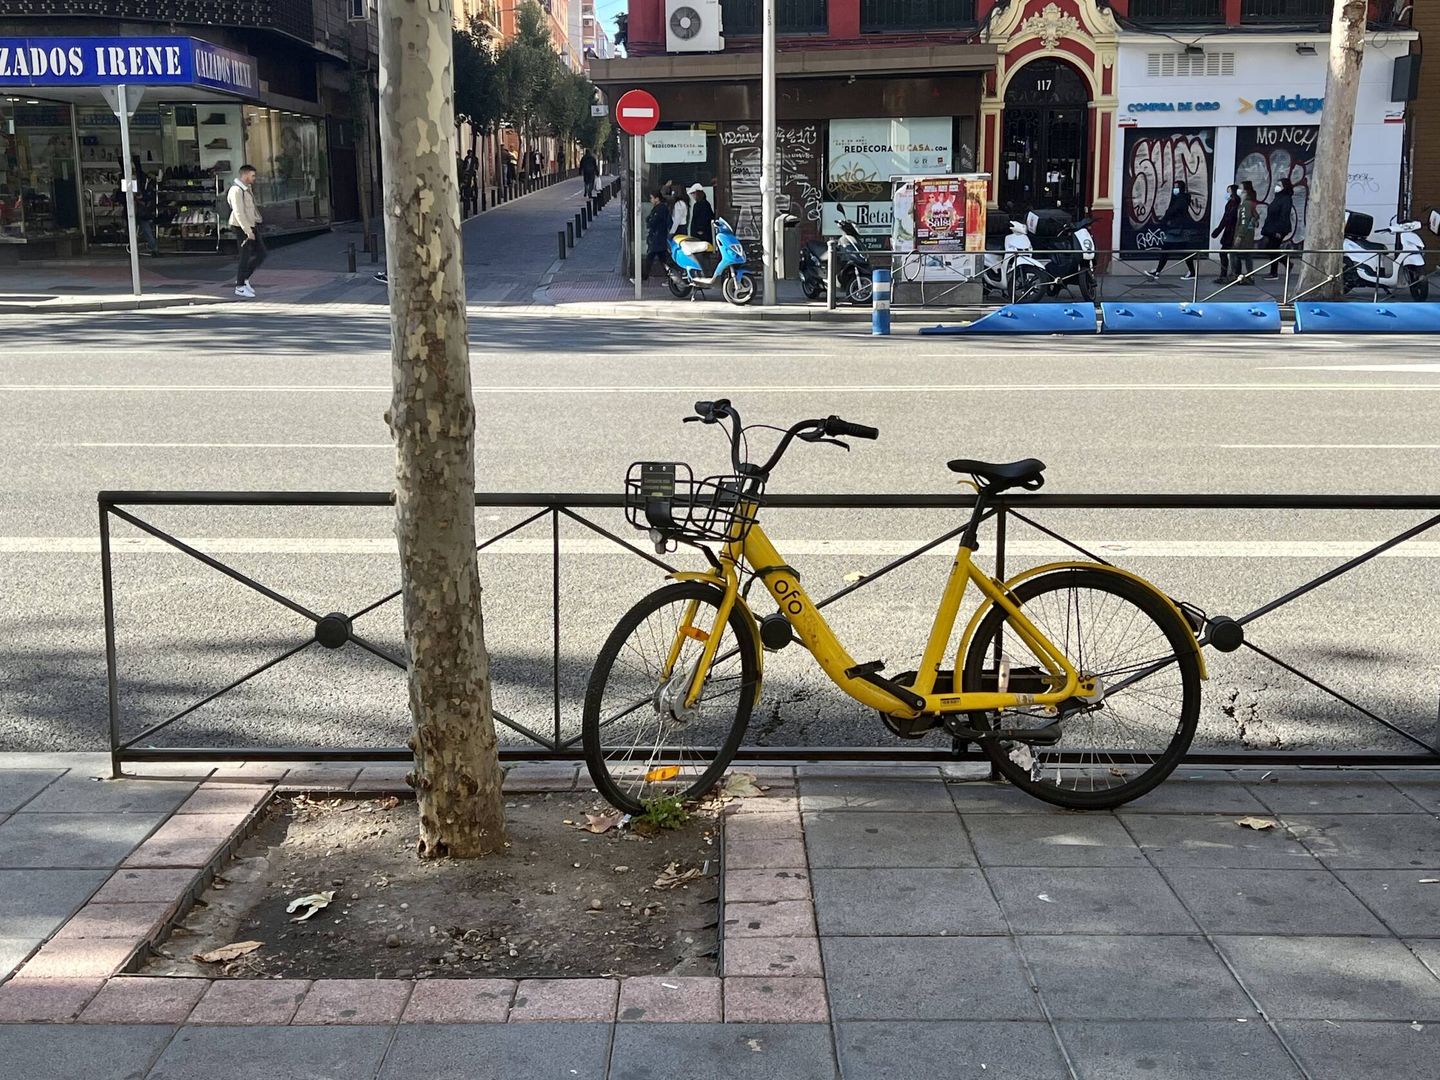 Una de las bicis de OFO abandonadas en Madrid. (Michael Mcloughlin)